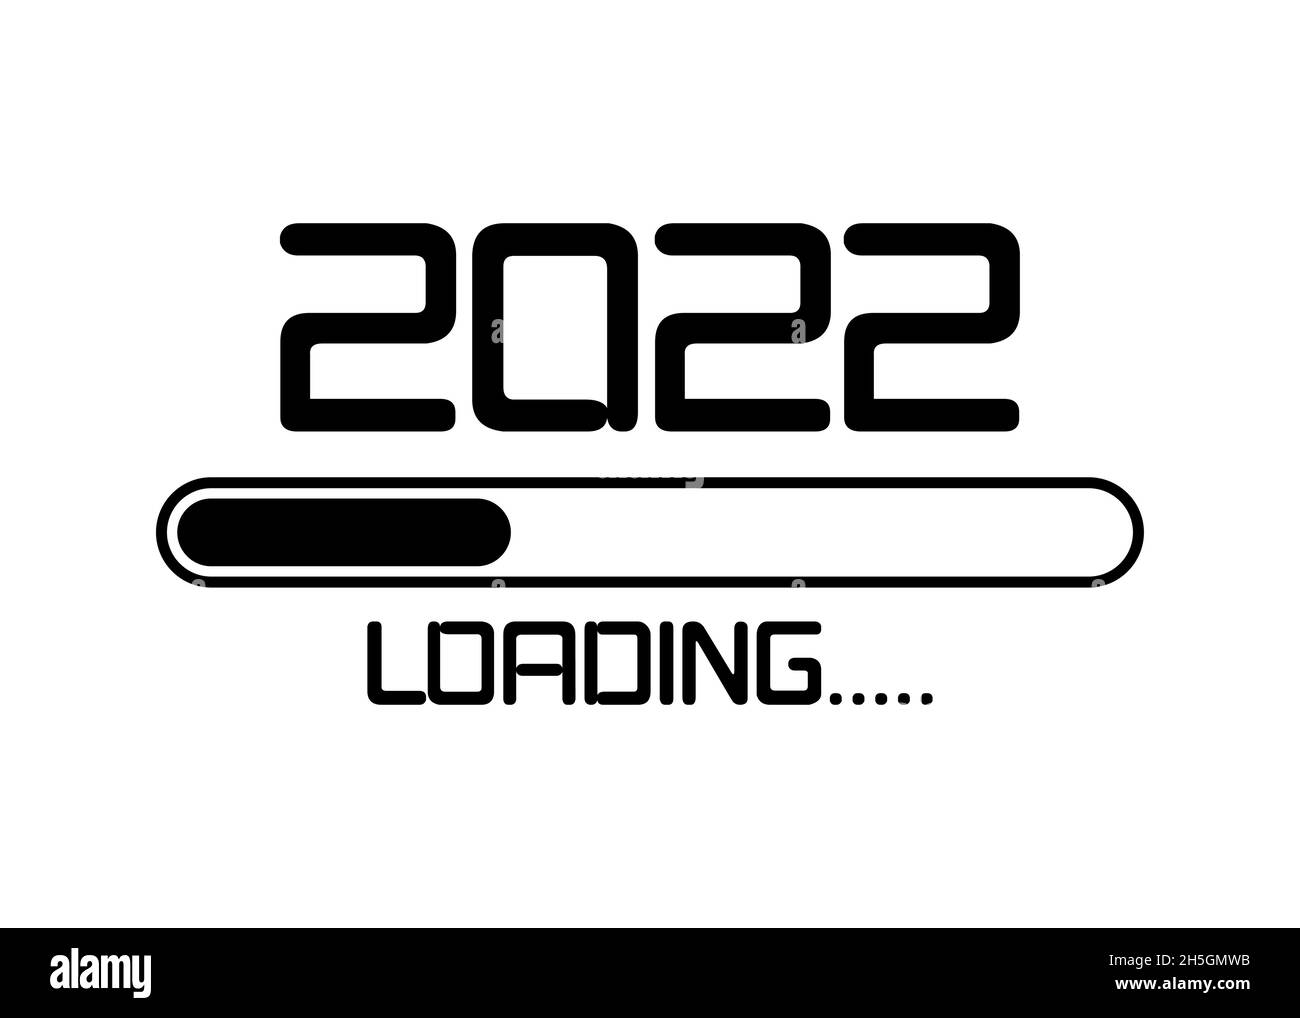 Felice anno nuovo 2022 con caricamento icona stile piatto. Progress bar sta per arrivare alla vigilia dell'anno nuovo. Illustrazione vettoriale con caricamento 2022. Isolato Illustrazione Vettoriale